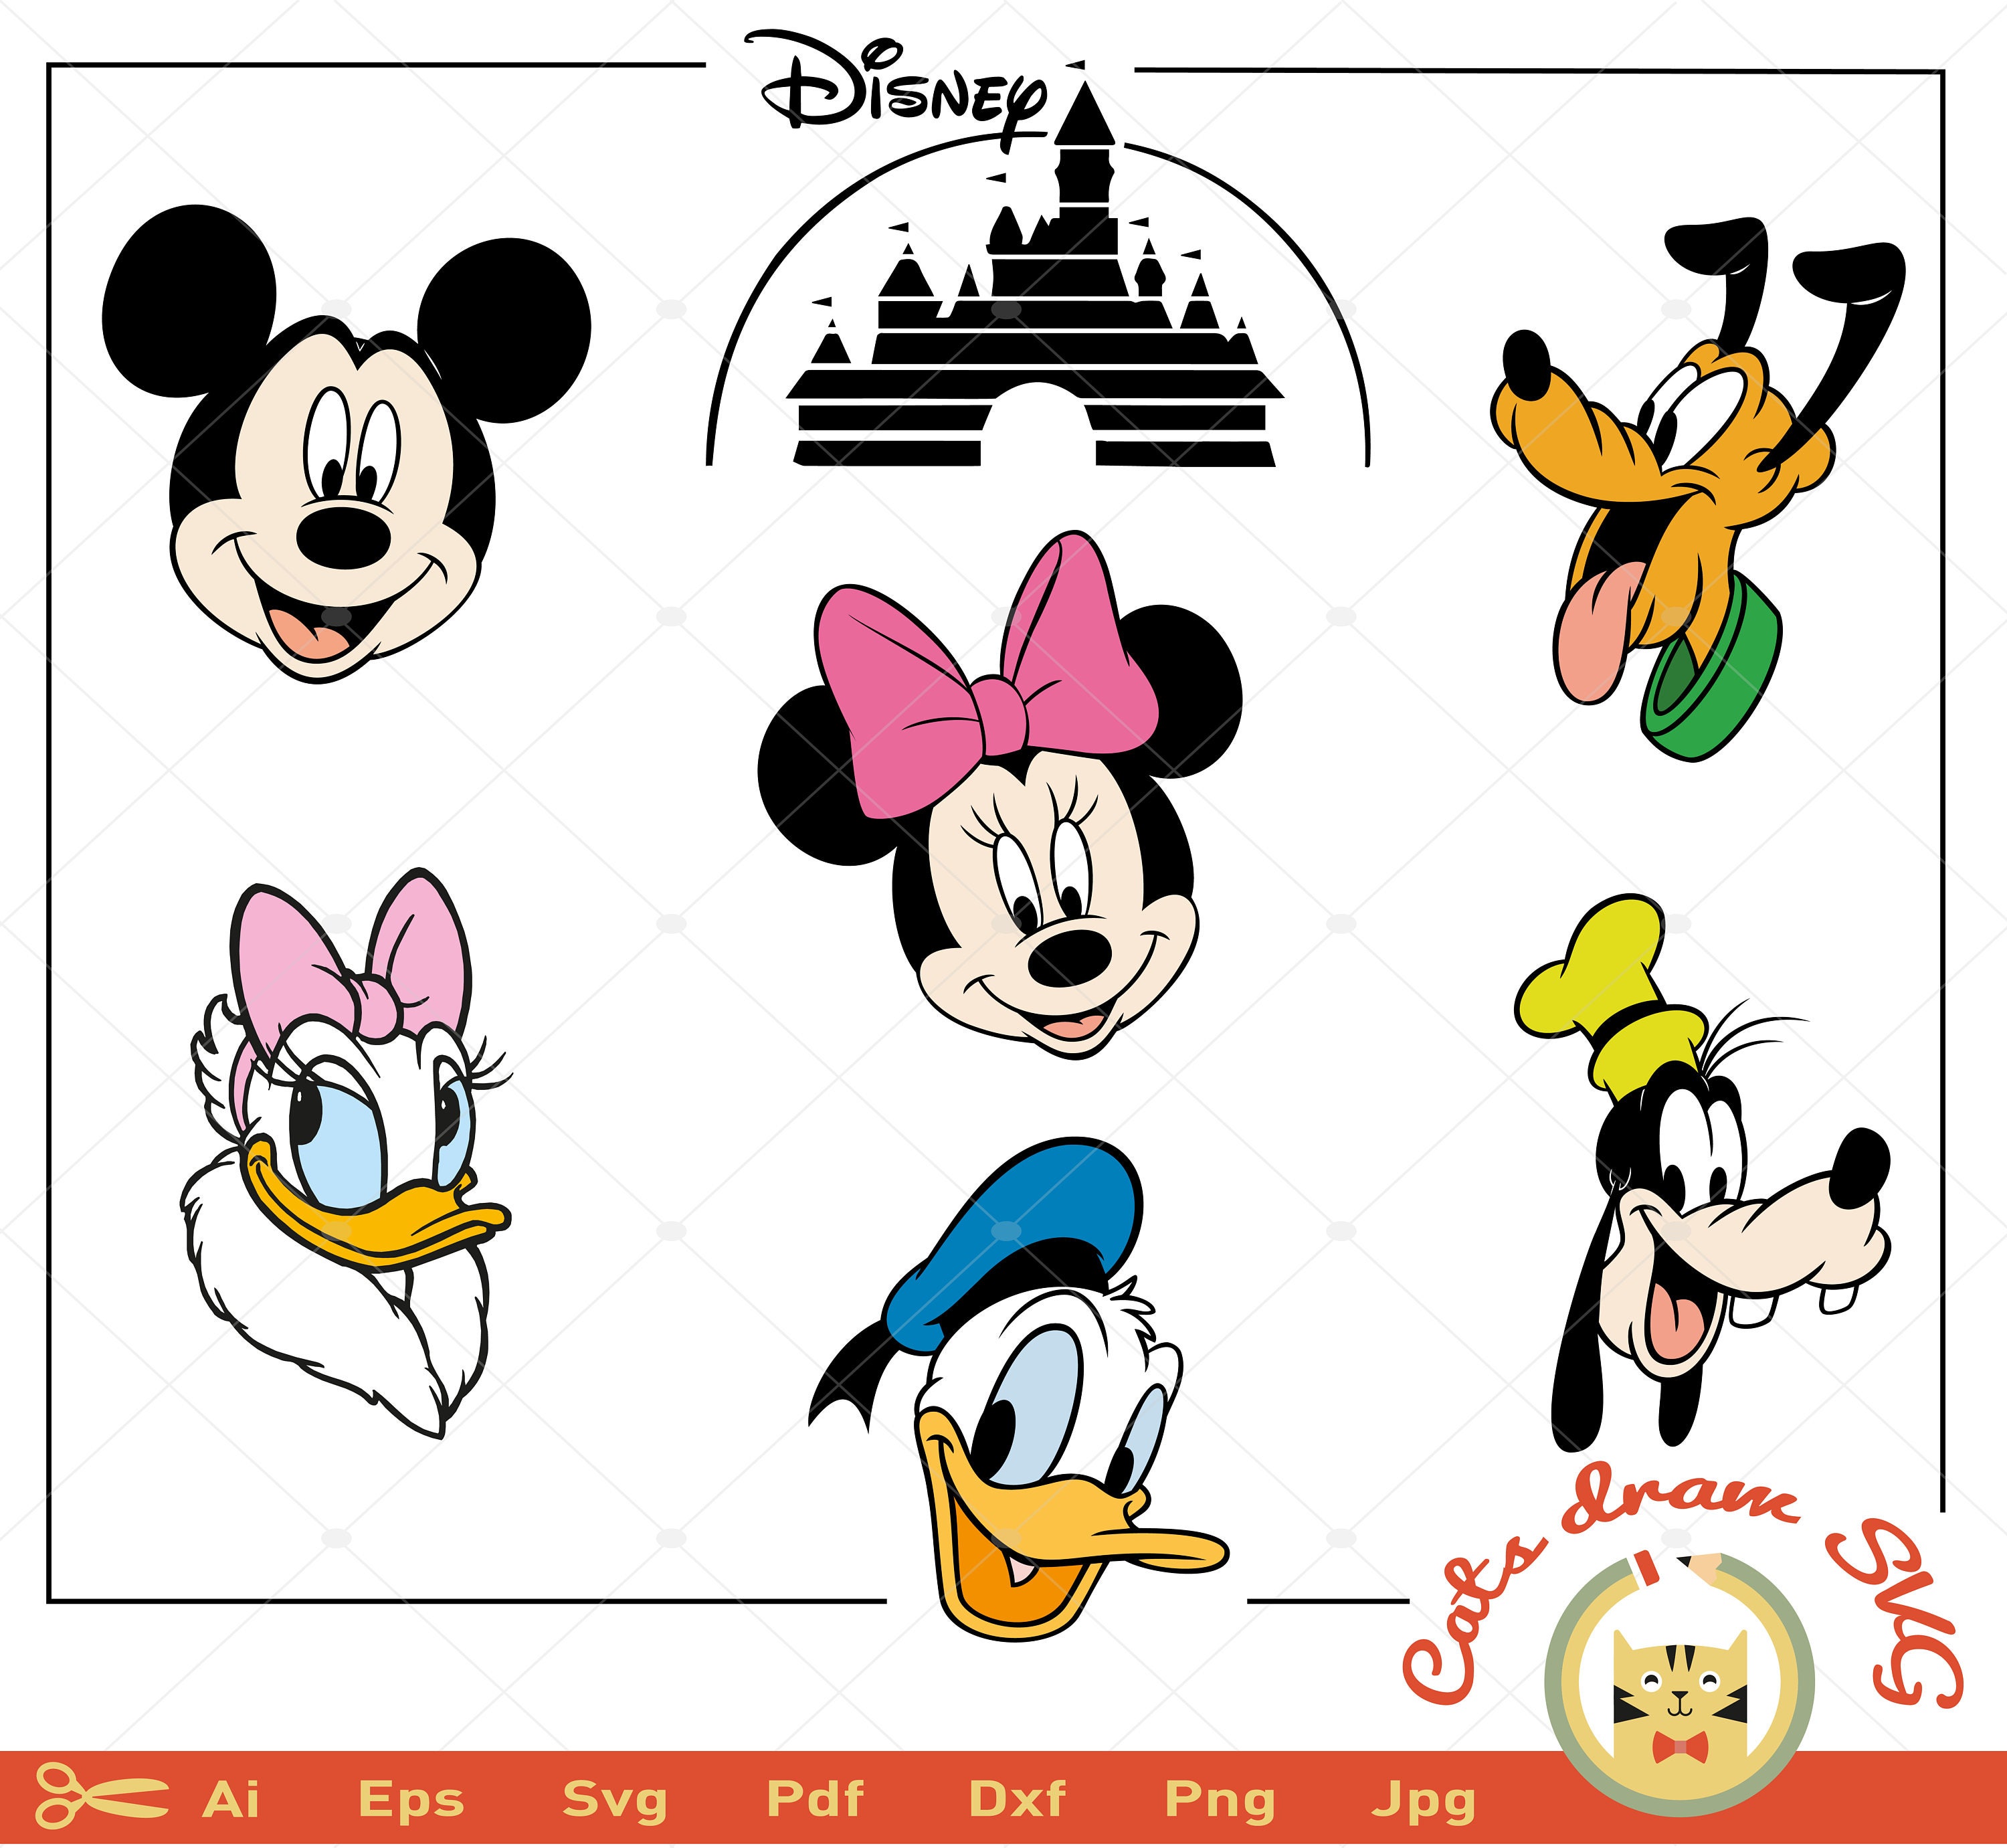 Download DISNEY SVG Donald duck svg Minnie Mouse svg Disney castle ...